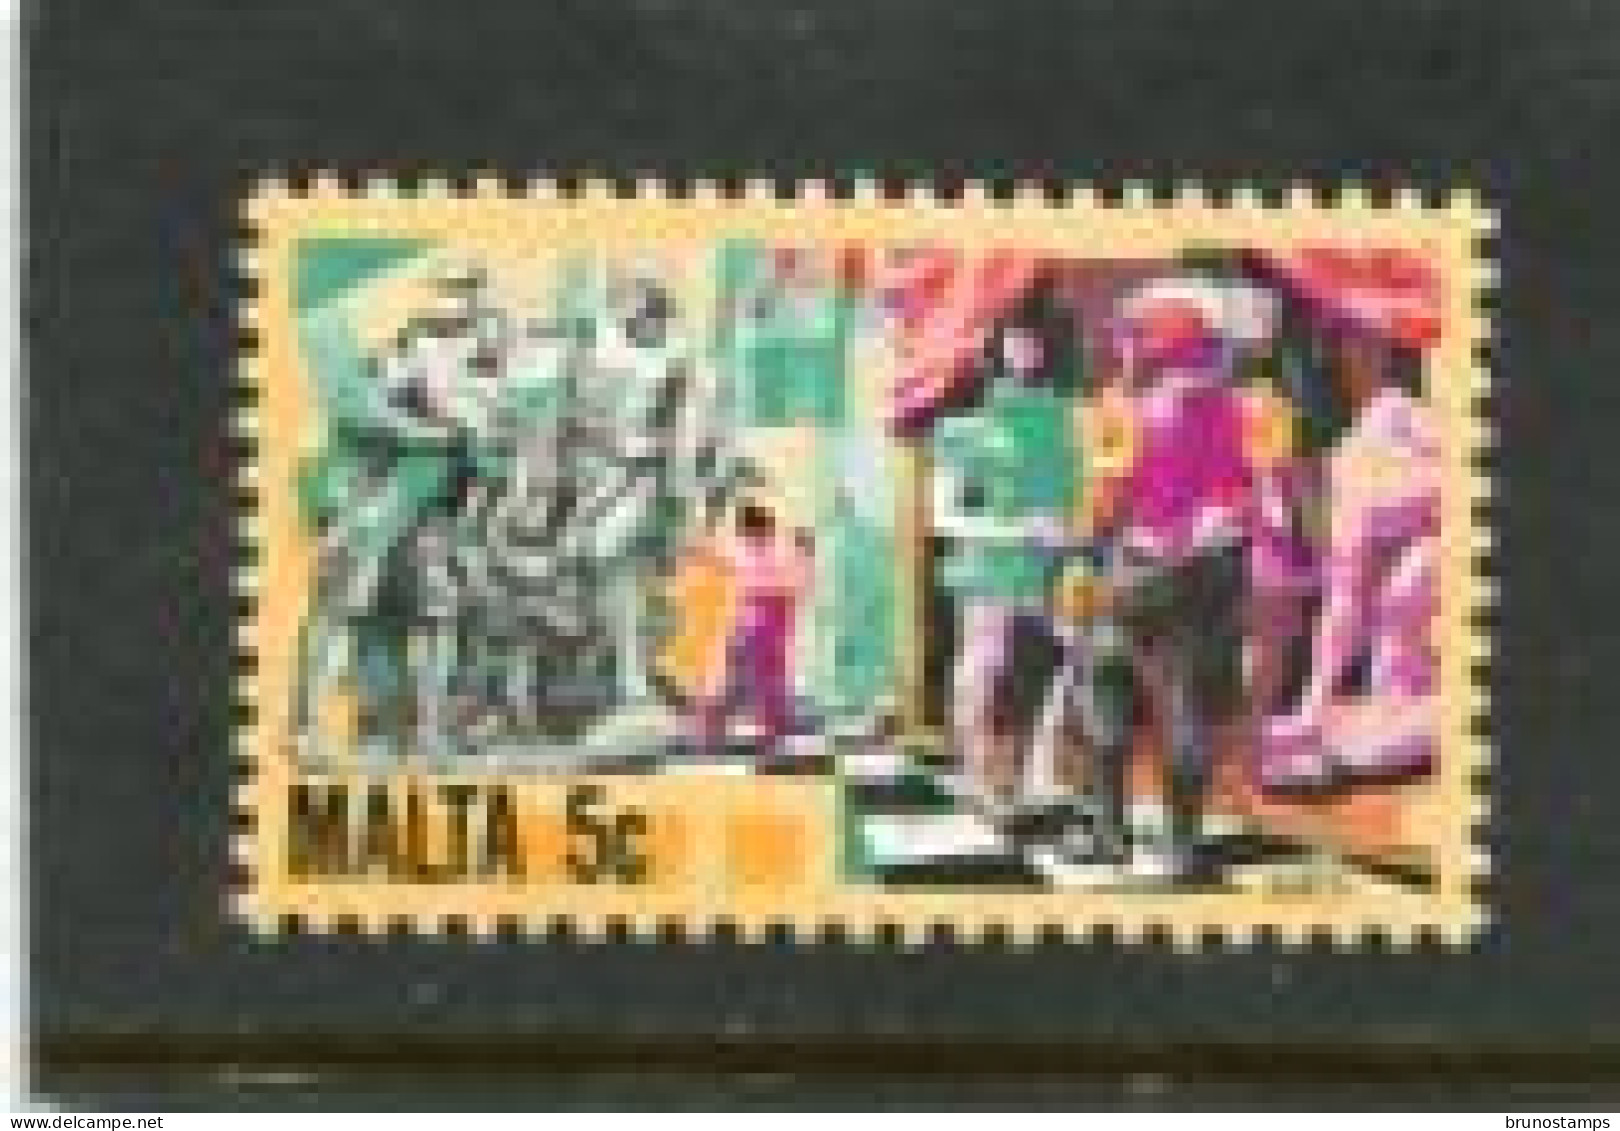 MALTA - 1981  5c  DEFINITIVE  MINT NH - Malta